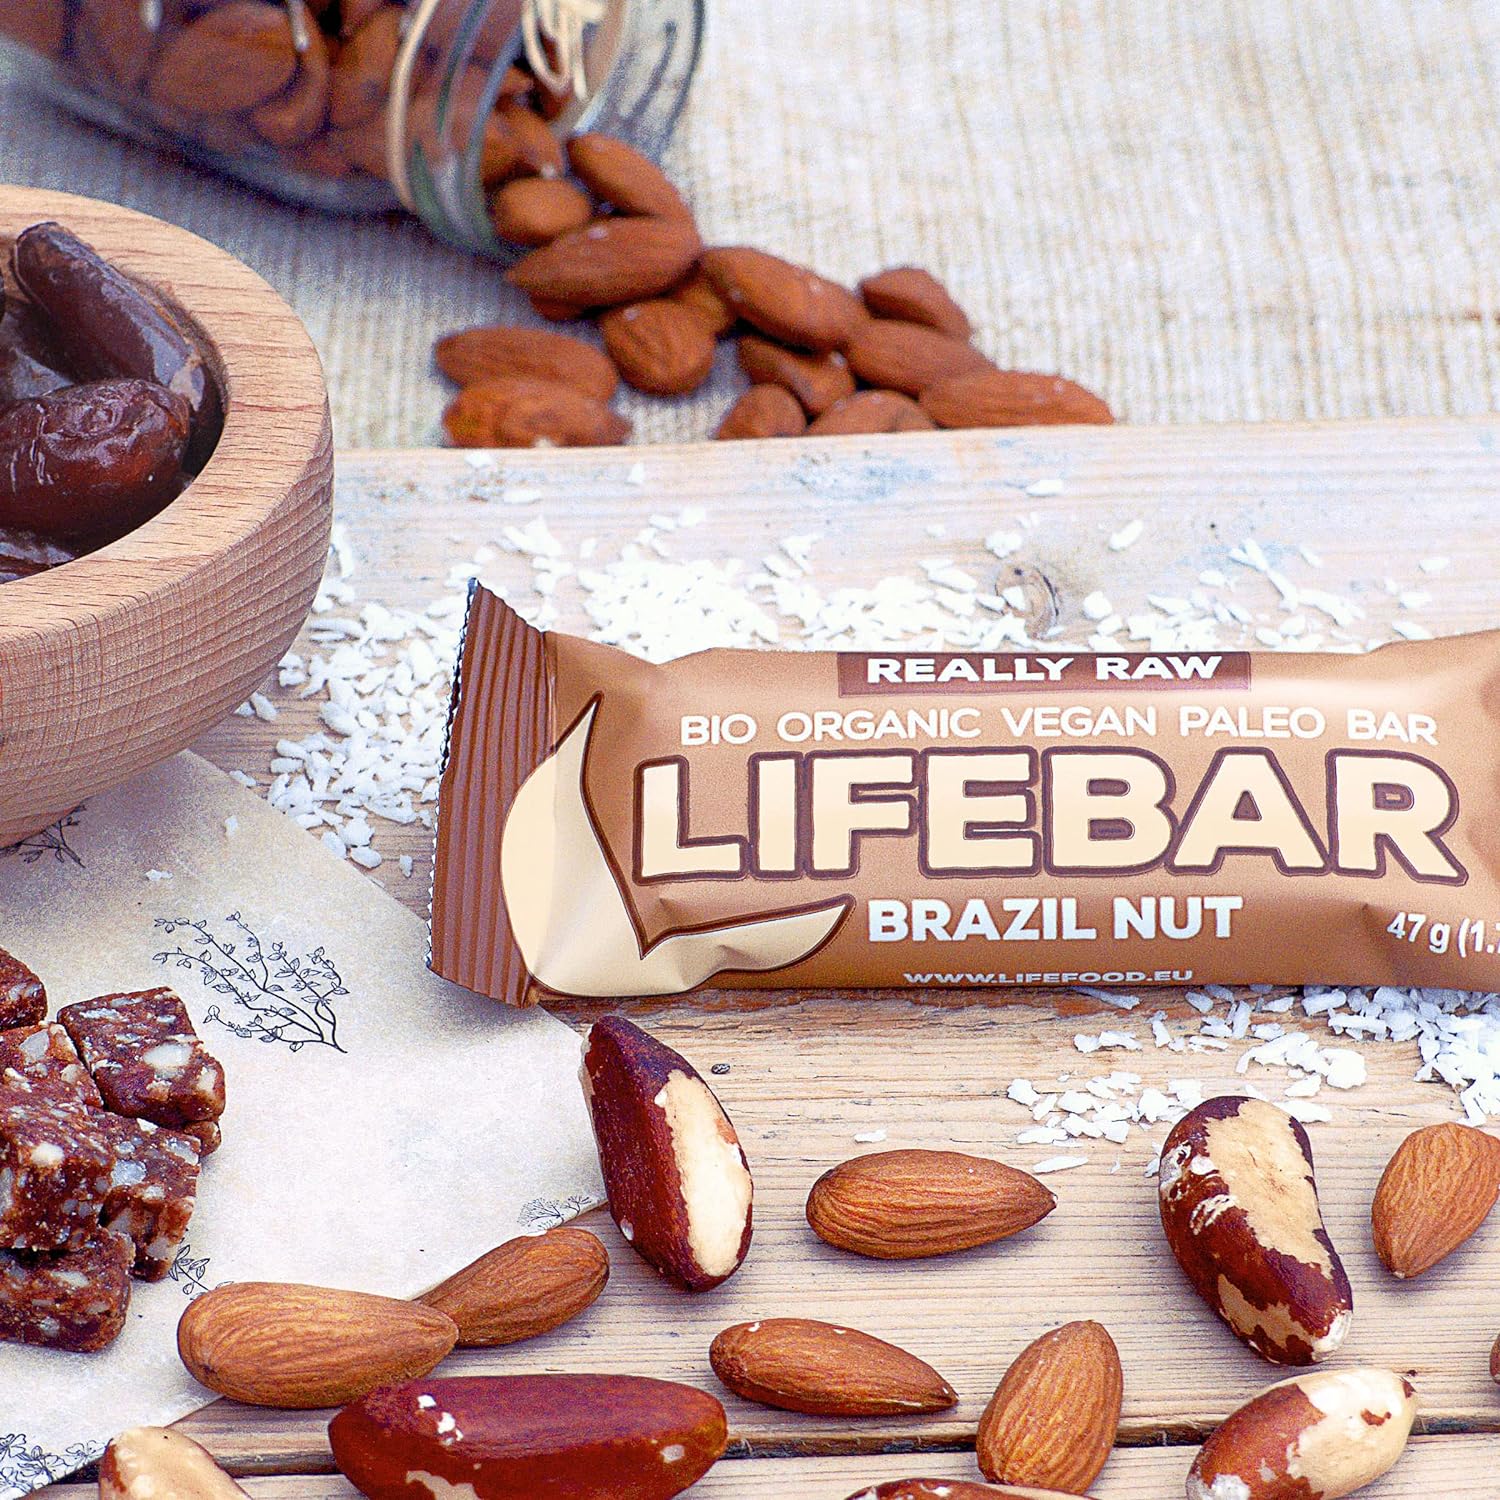 Батончик Lifefood Lifebar энергетический с бразильским орехом органический 47 г - фото 6